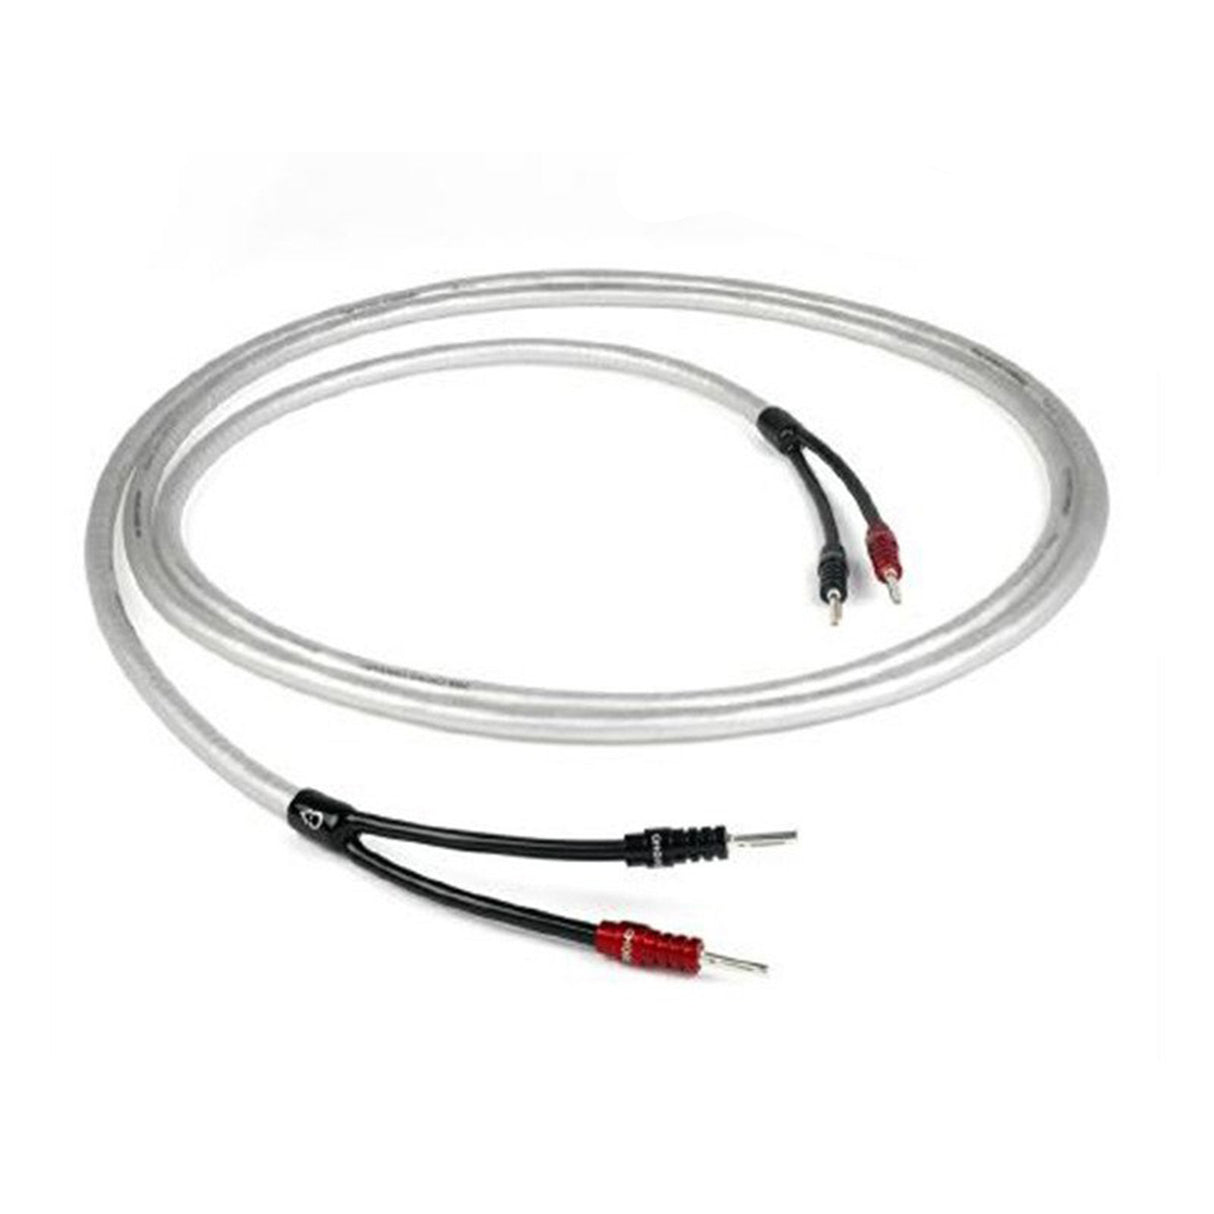 Chord ClearwayX speaker cable- 1 Meter